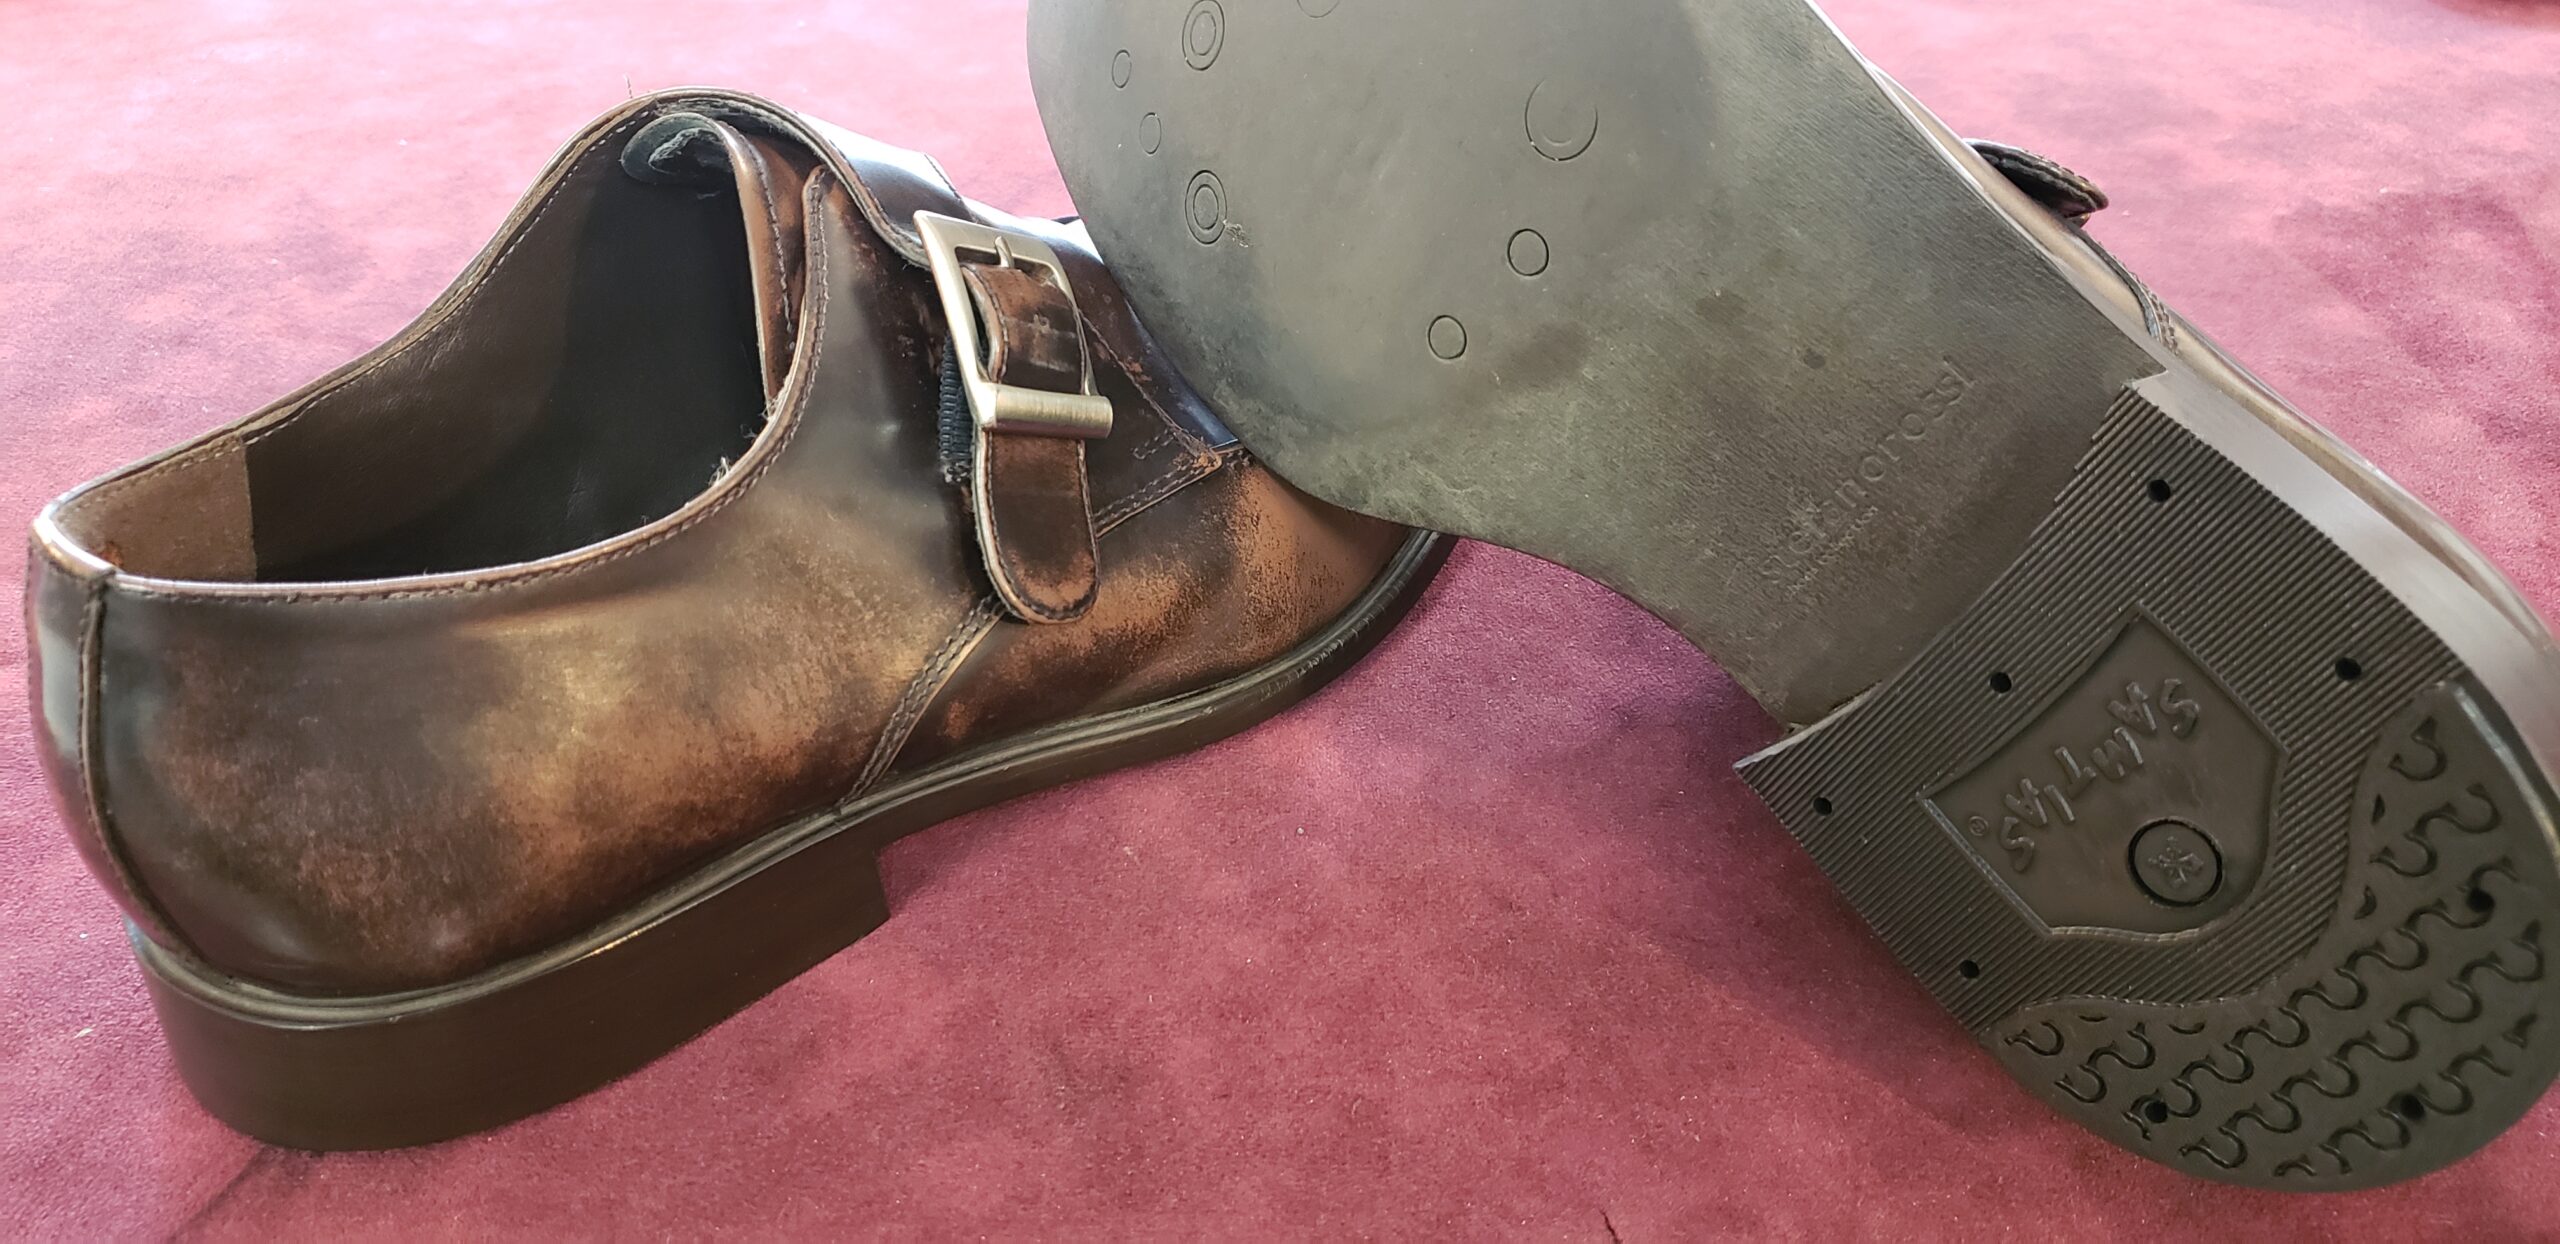 リーガルの修理でよくある修理内容と目安金額 | 【全国対応】革靴修理 ...